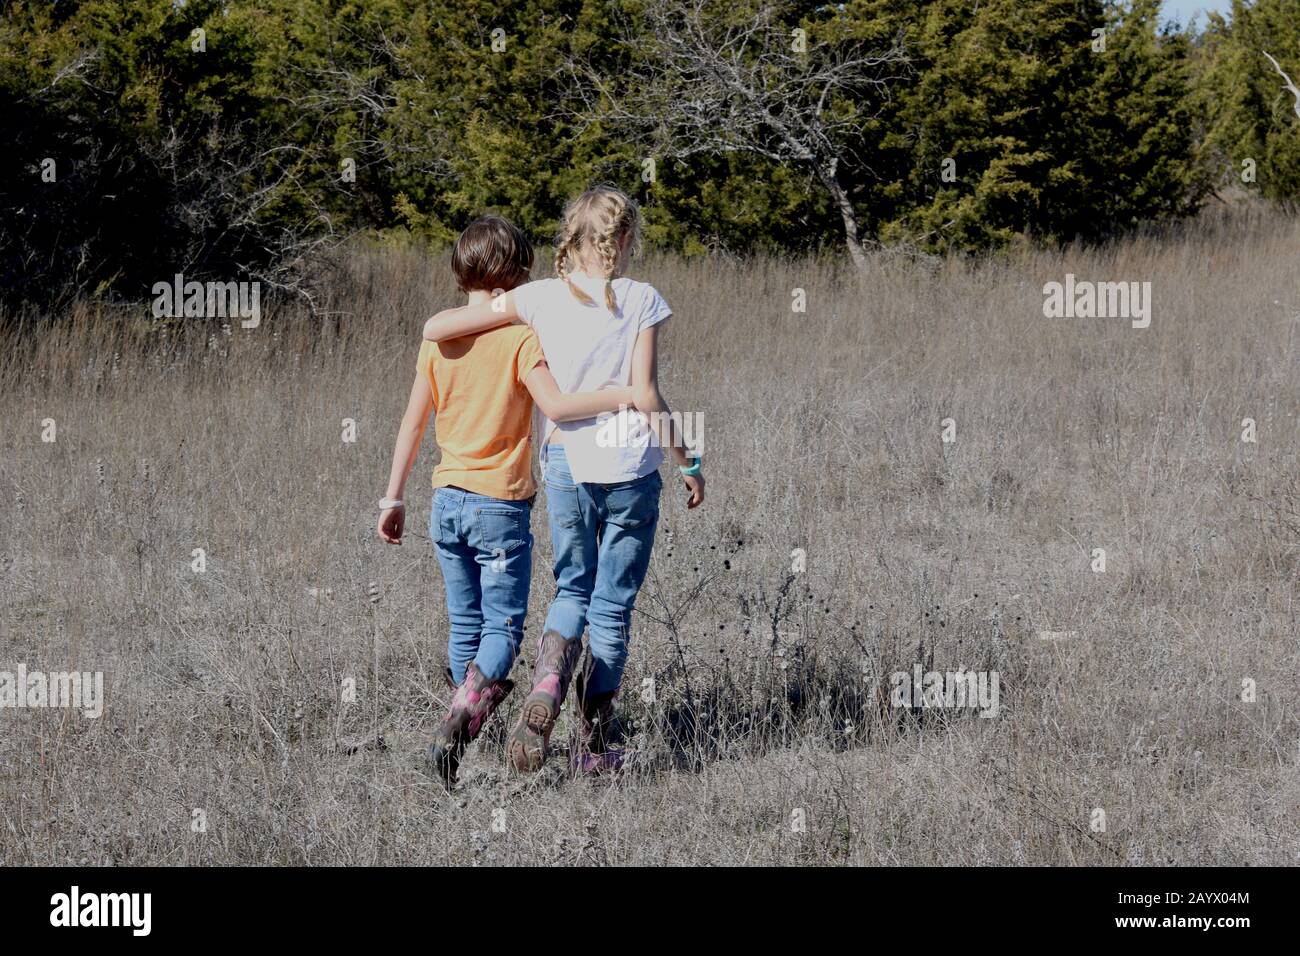 Jeunes soeurs avec des bras autour l'un de l'autre marchant dans un parc naturel vu de l'arrière Banque D'Images